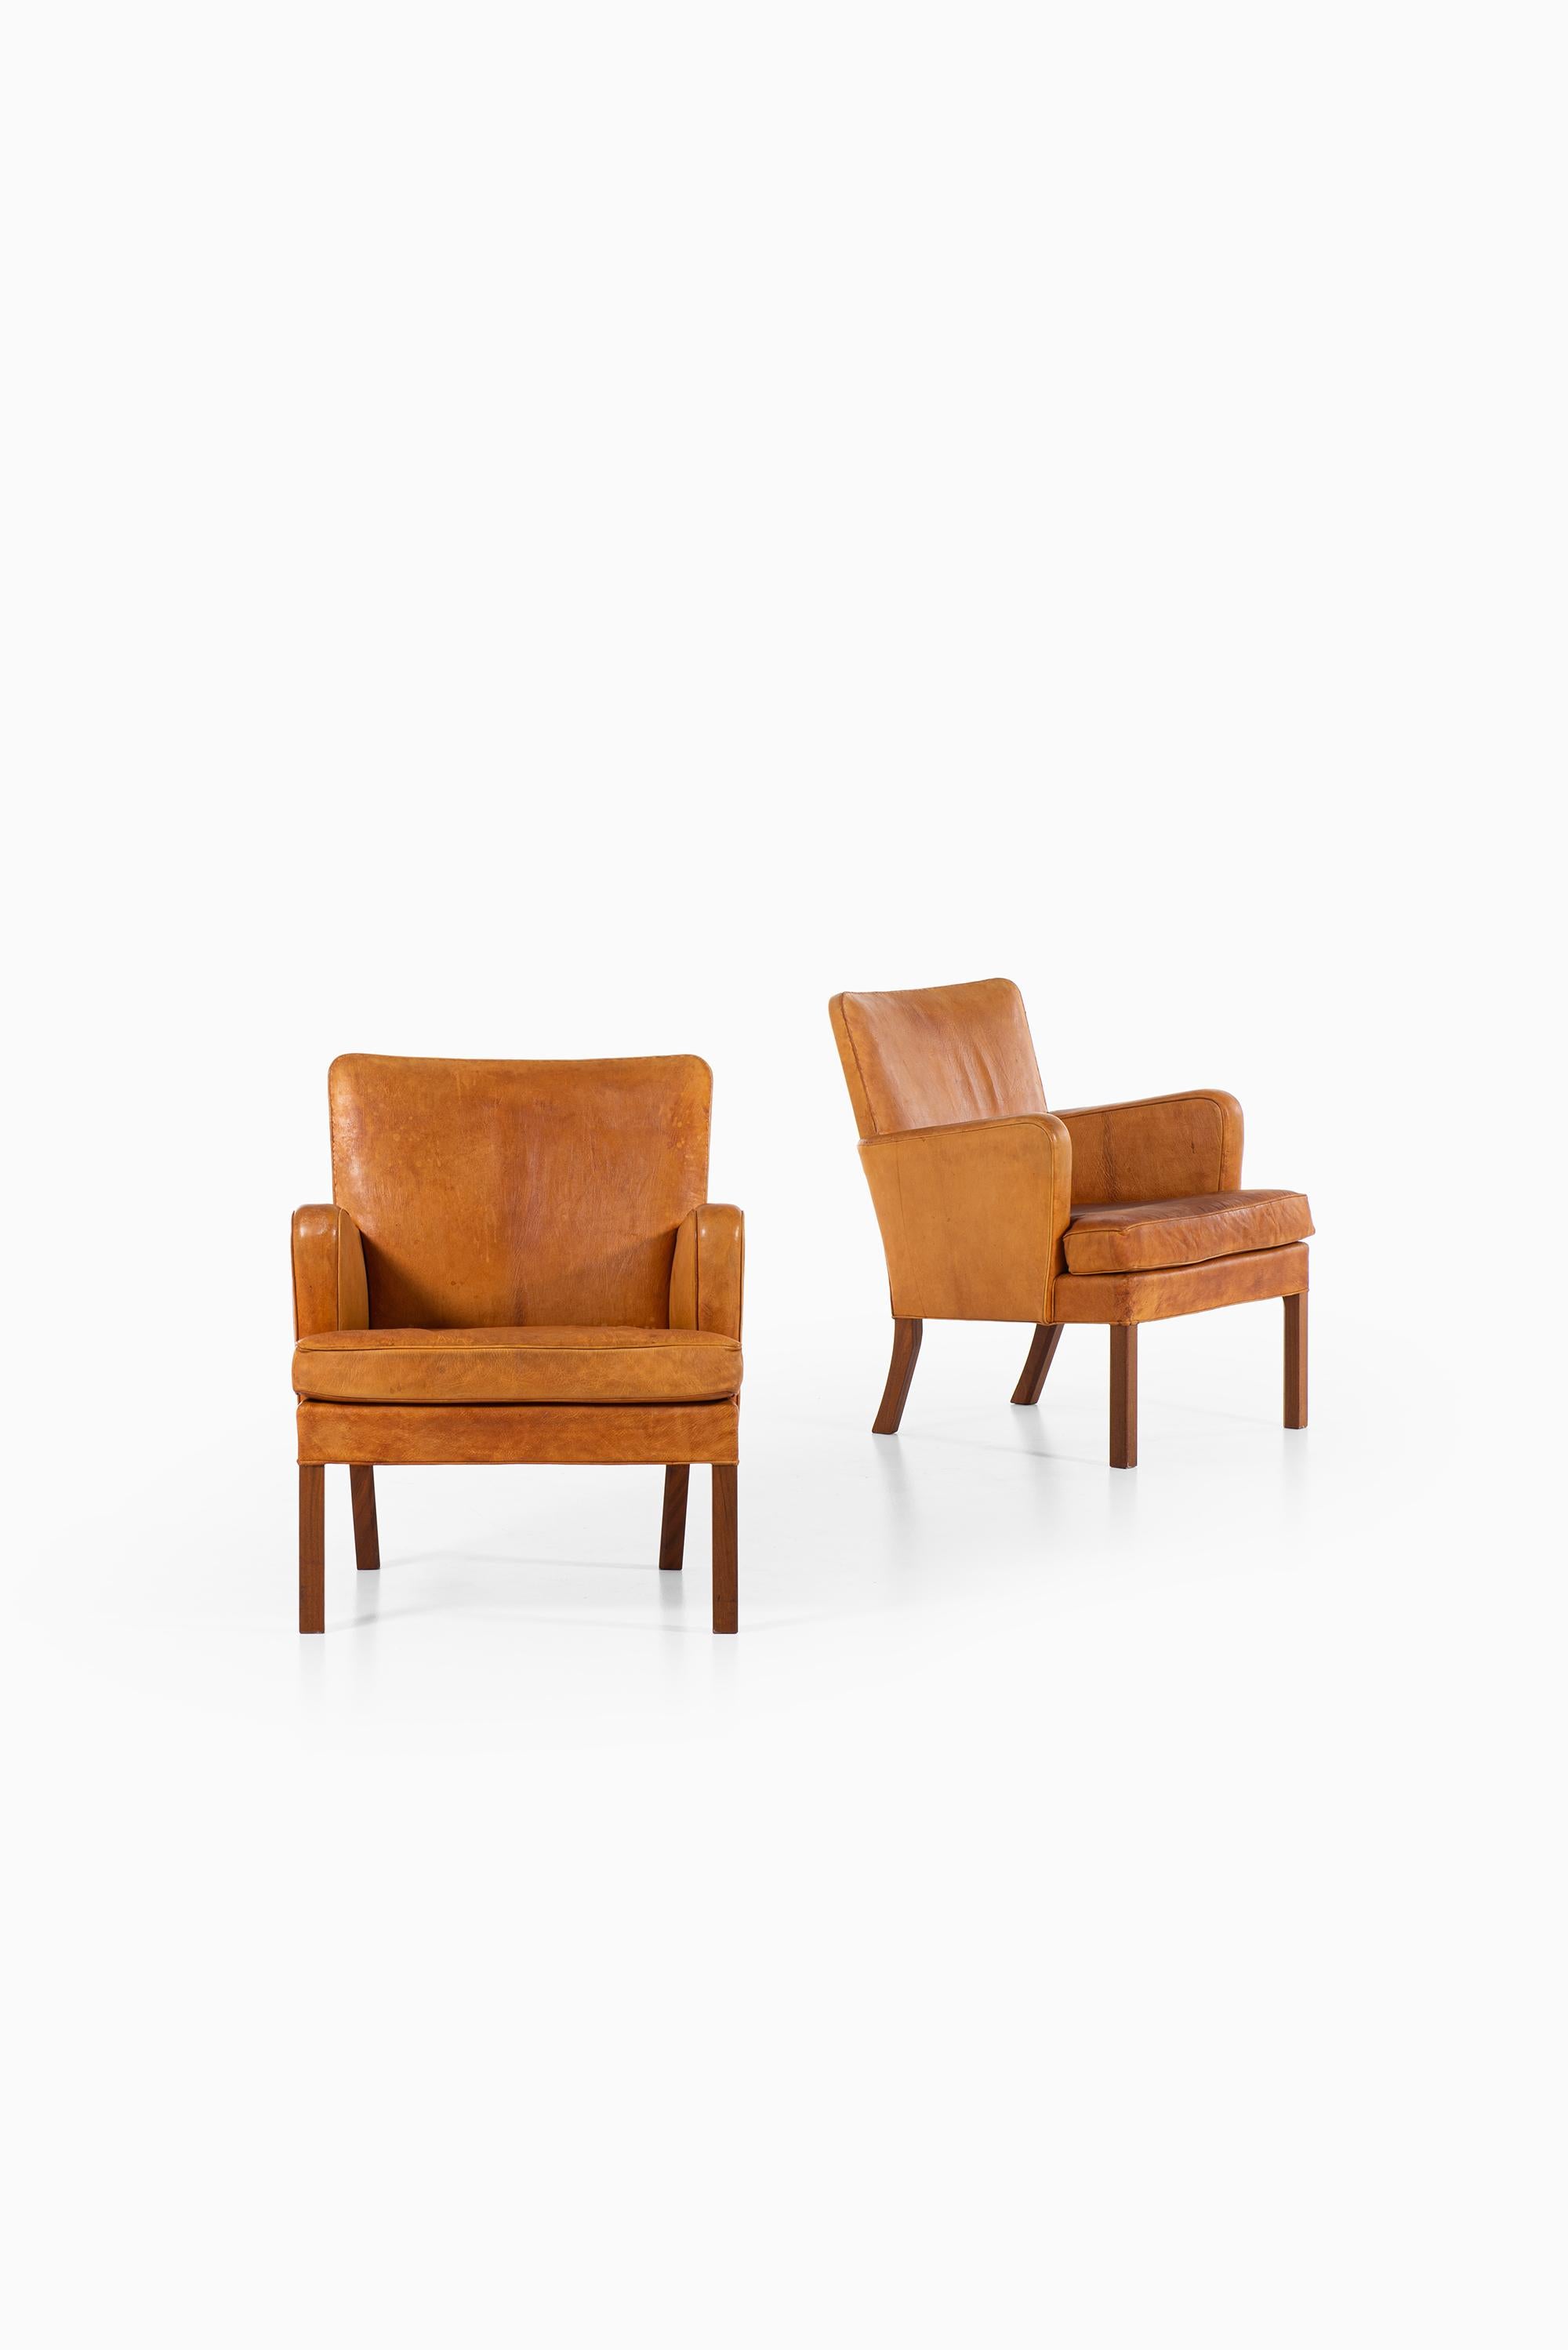 Rare paire de fauteuils modèle 5313 conçus par Kaare Klint. Produit par Rud. Rasmussen Cabinet d'ébénisterie au Danemark.